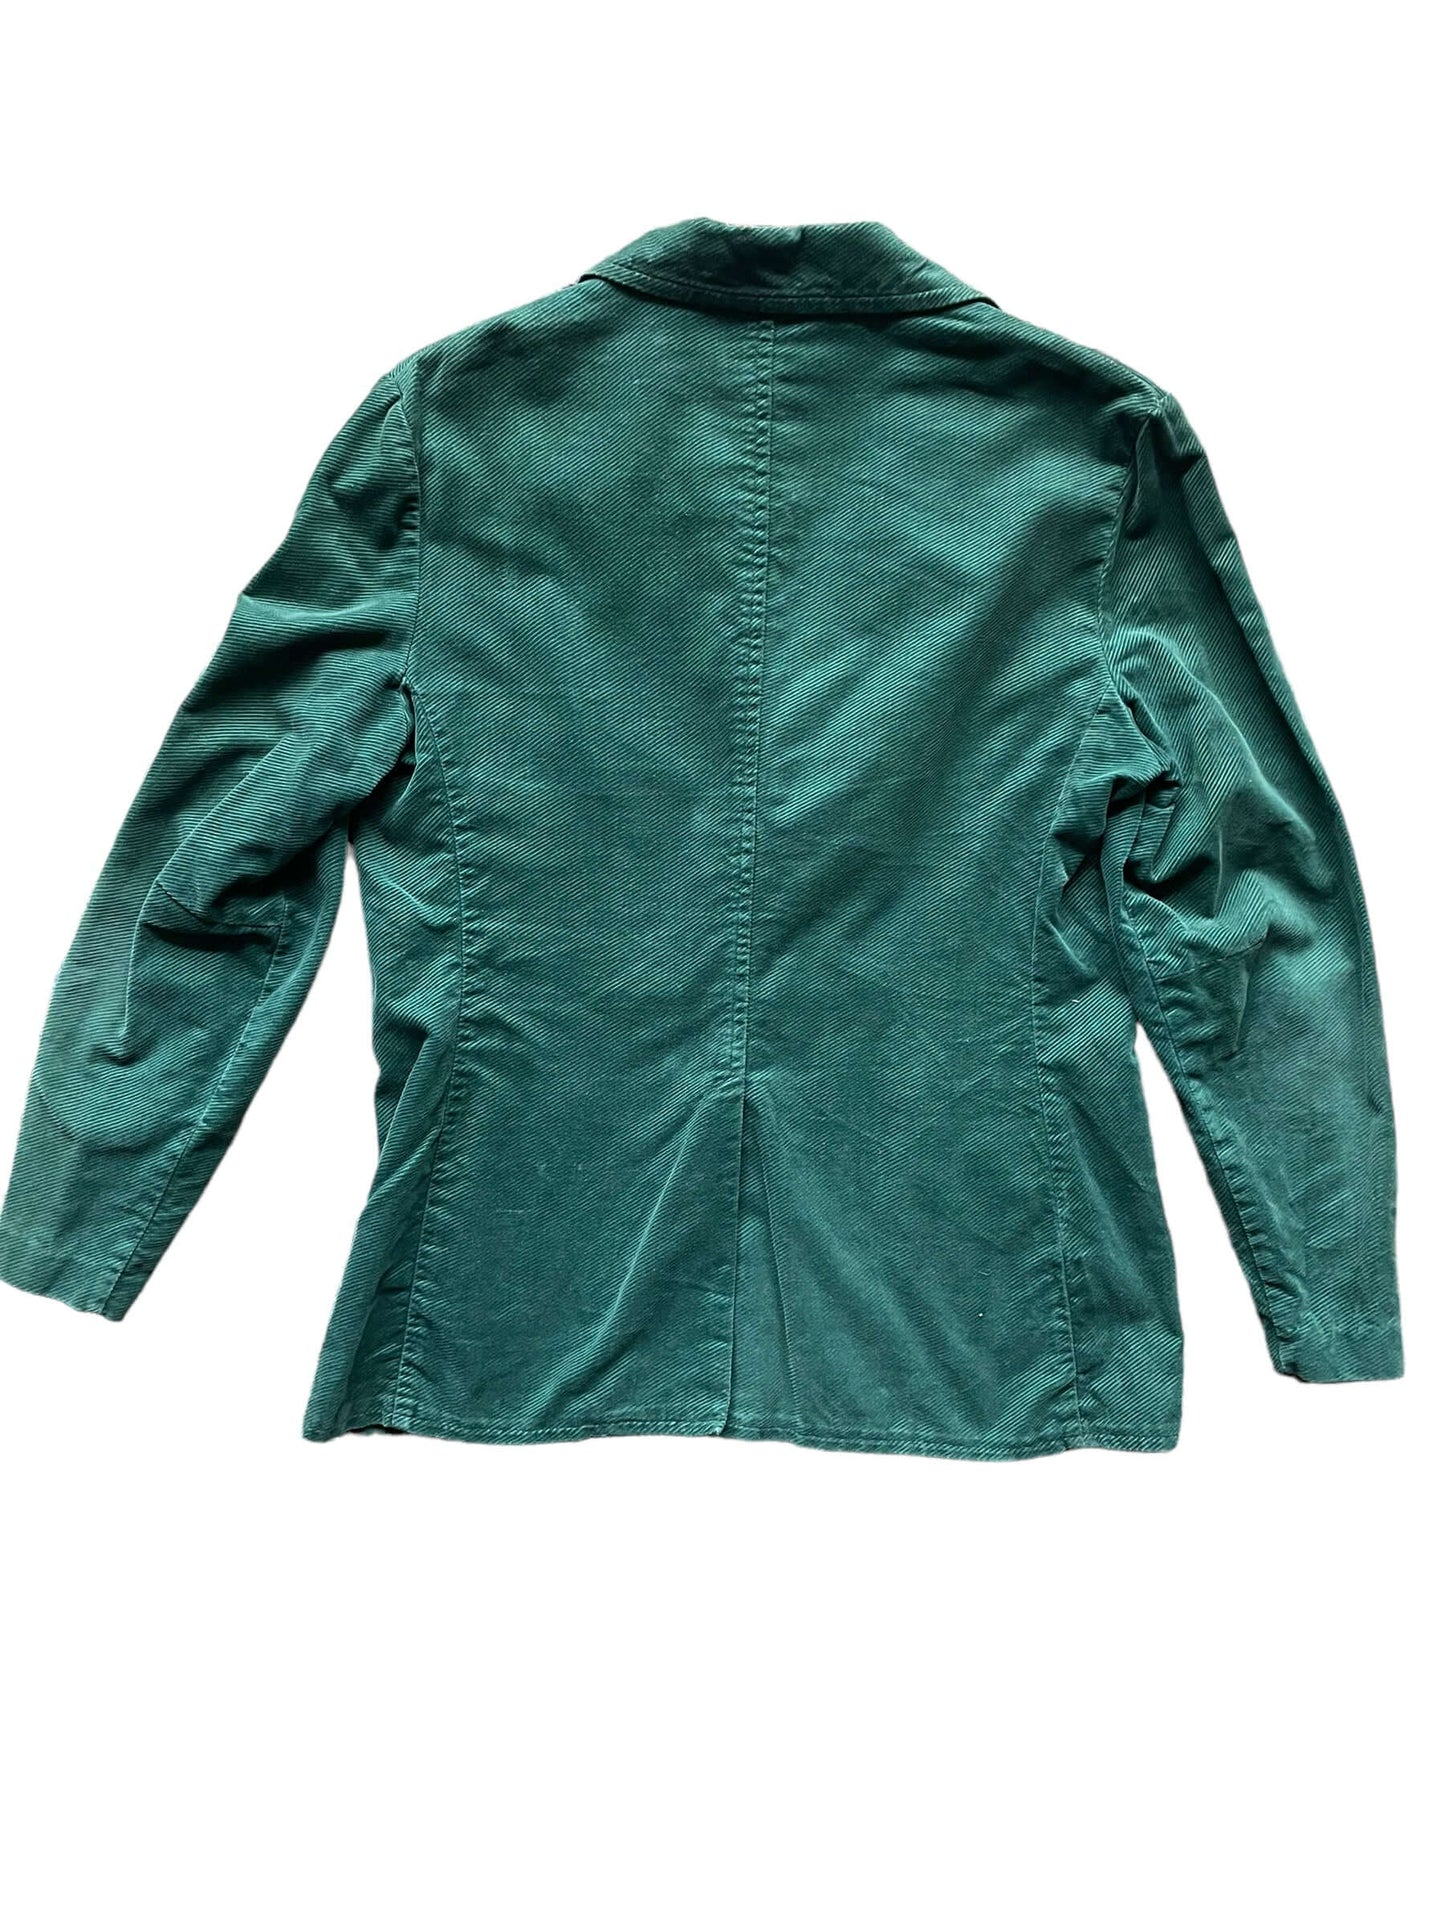 Full back view of Vintage 1970s Green Corduroy Blazer | Vintage Ladies Clothing | Barn Owl True Vintage